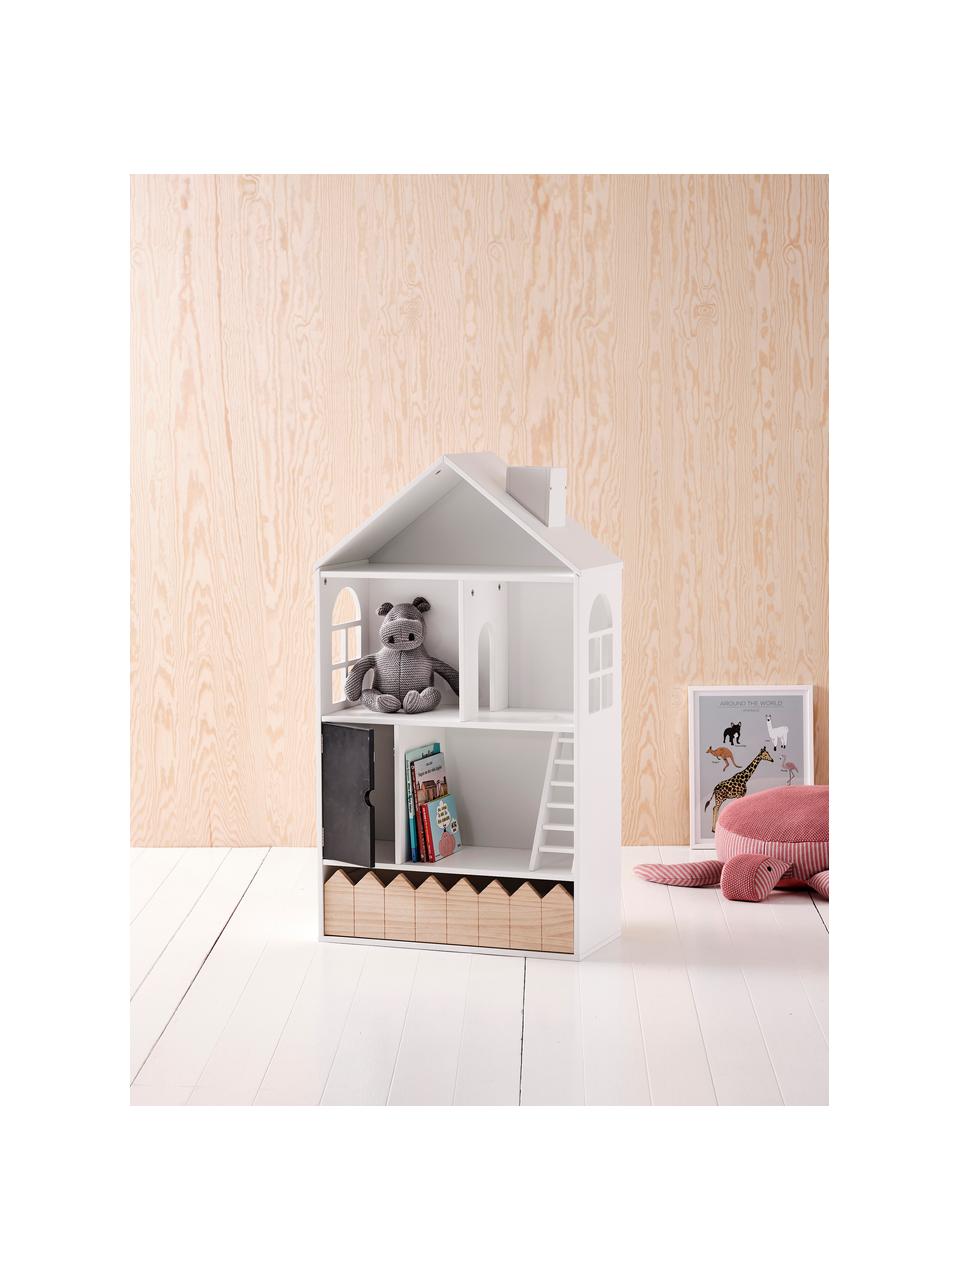 Domeček pro panenky Mi Casa Su Casa, Borové dřevo, MDF deska (dřevovláknitá deska střední hustoty), Bílá, černá, Š 61 cm, V 106 cm